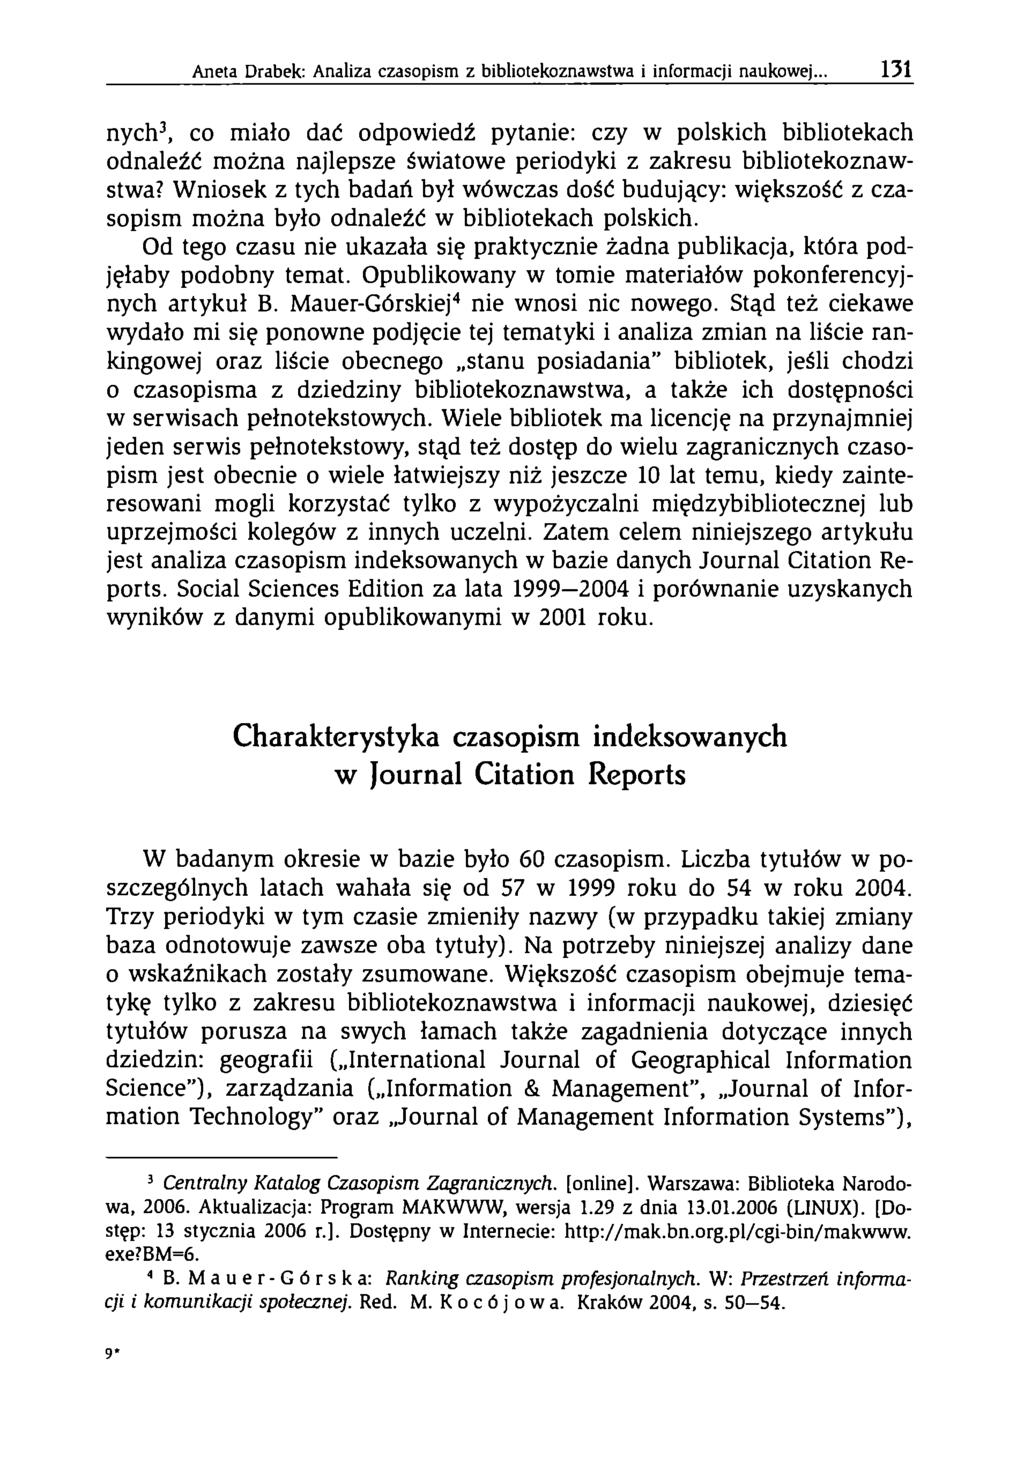 Aneta Drabek: Analiza czasopism z bibliotekoznawstwa i inform acji naukowej.